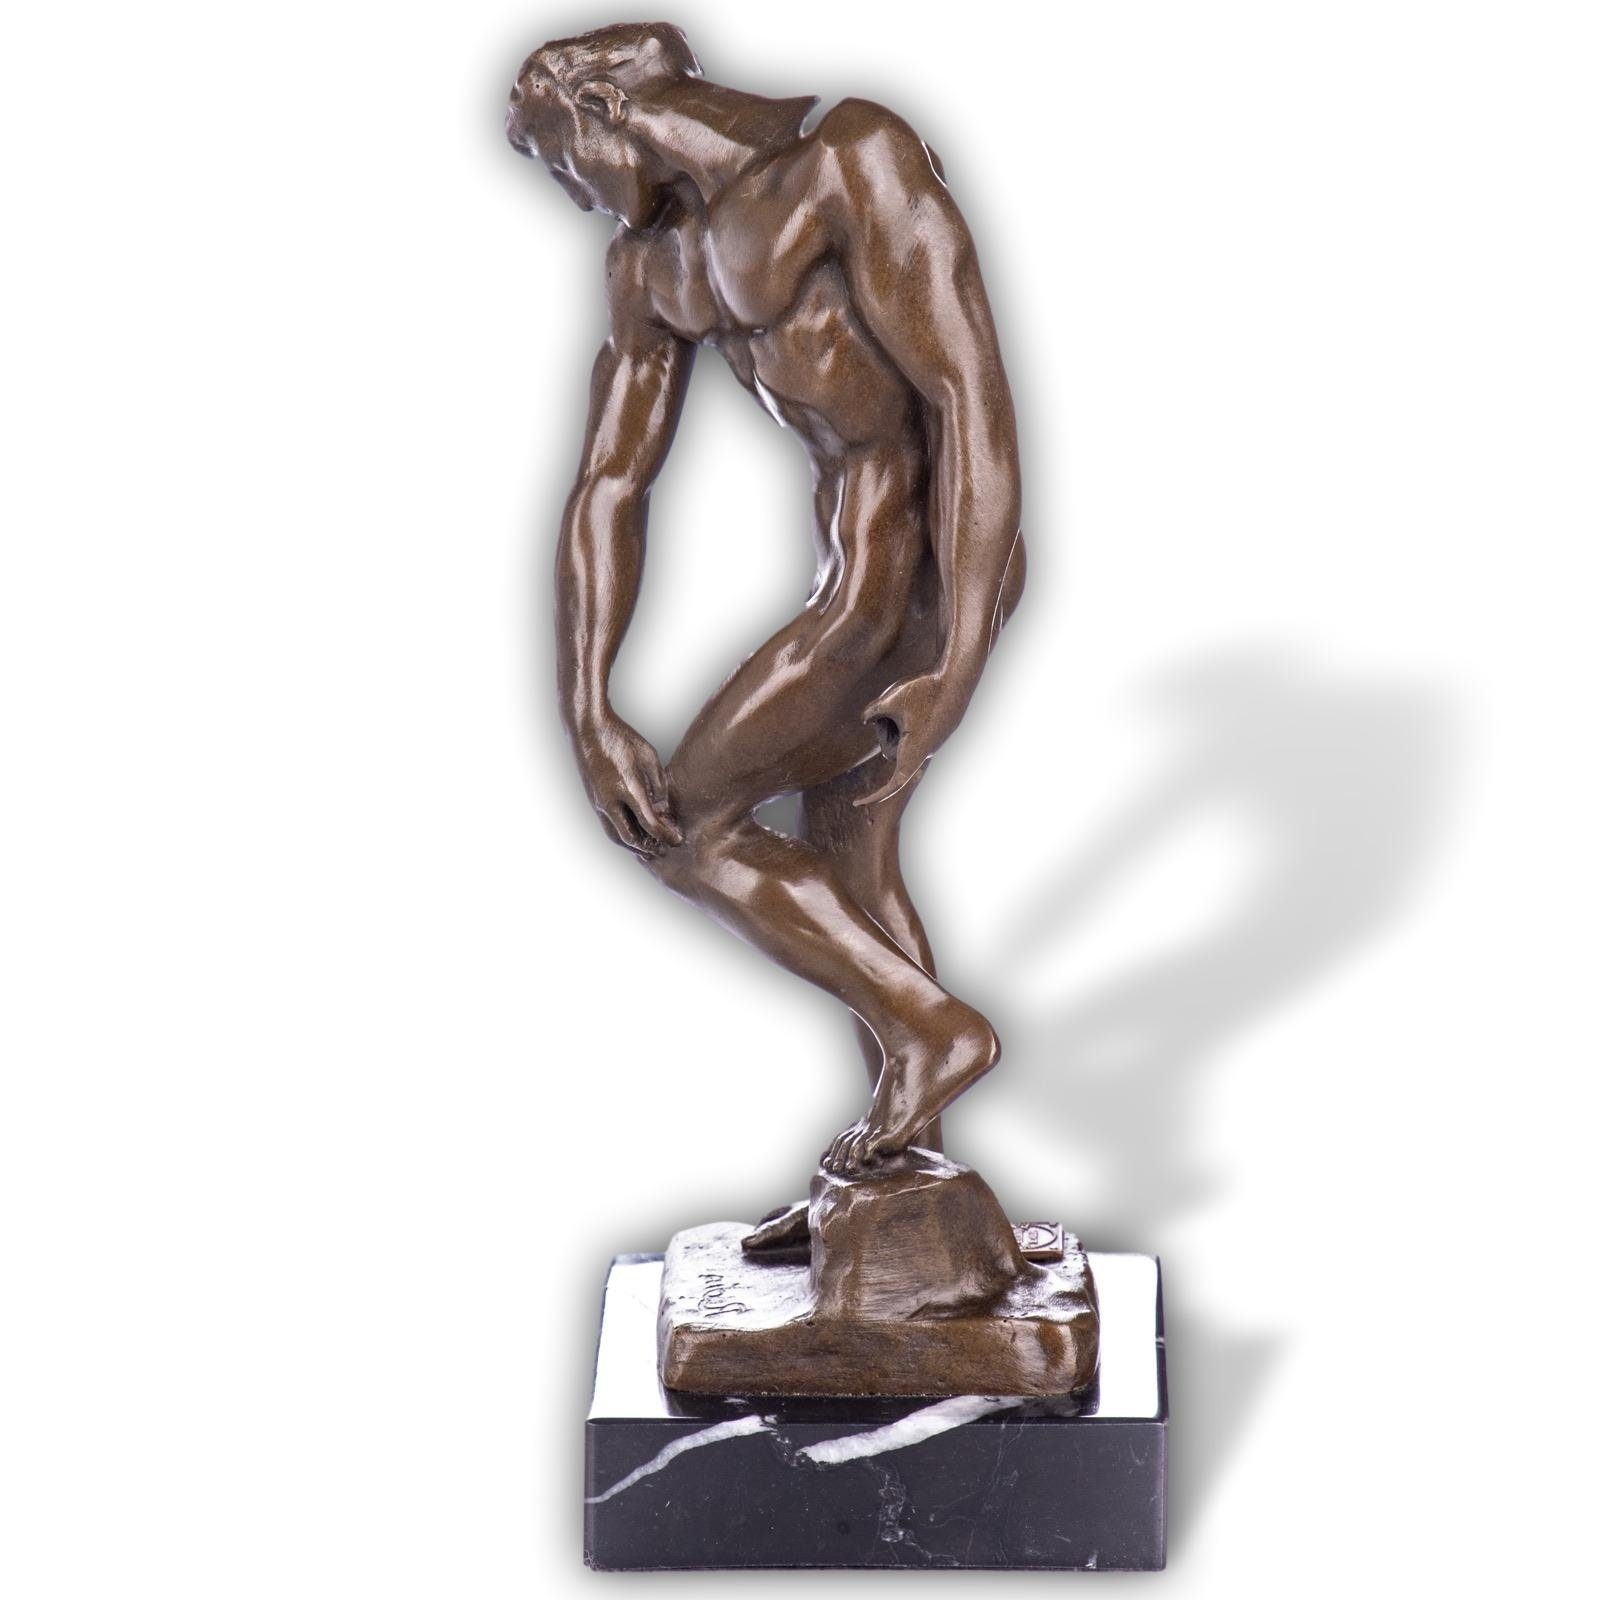 Aubaho Skulptur Skulptur Bronze Figur Akt Adam nach Rodin 20cm Antik-Stil Replik Kopie